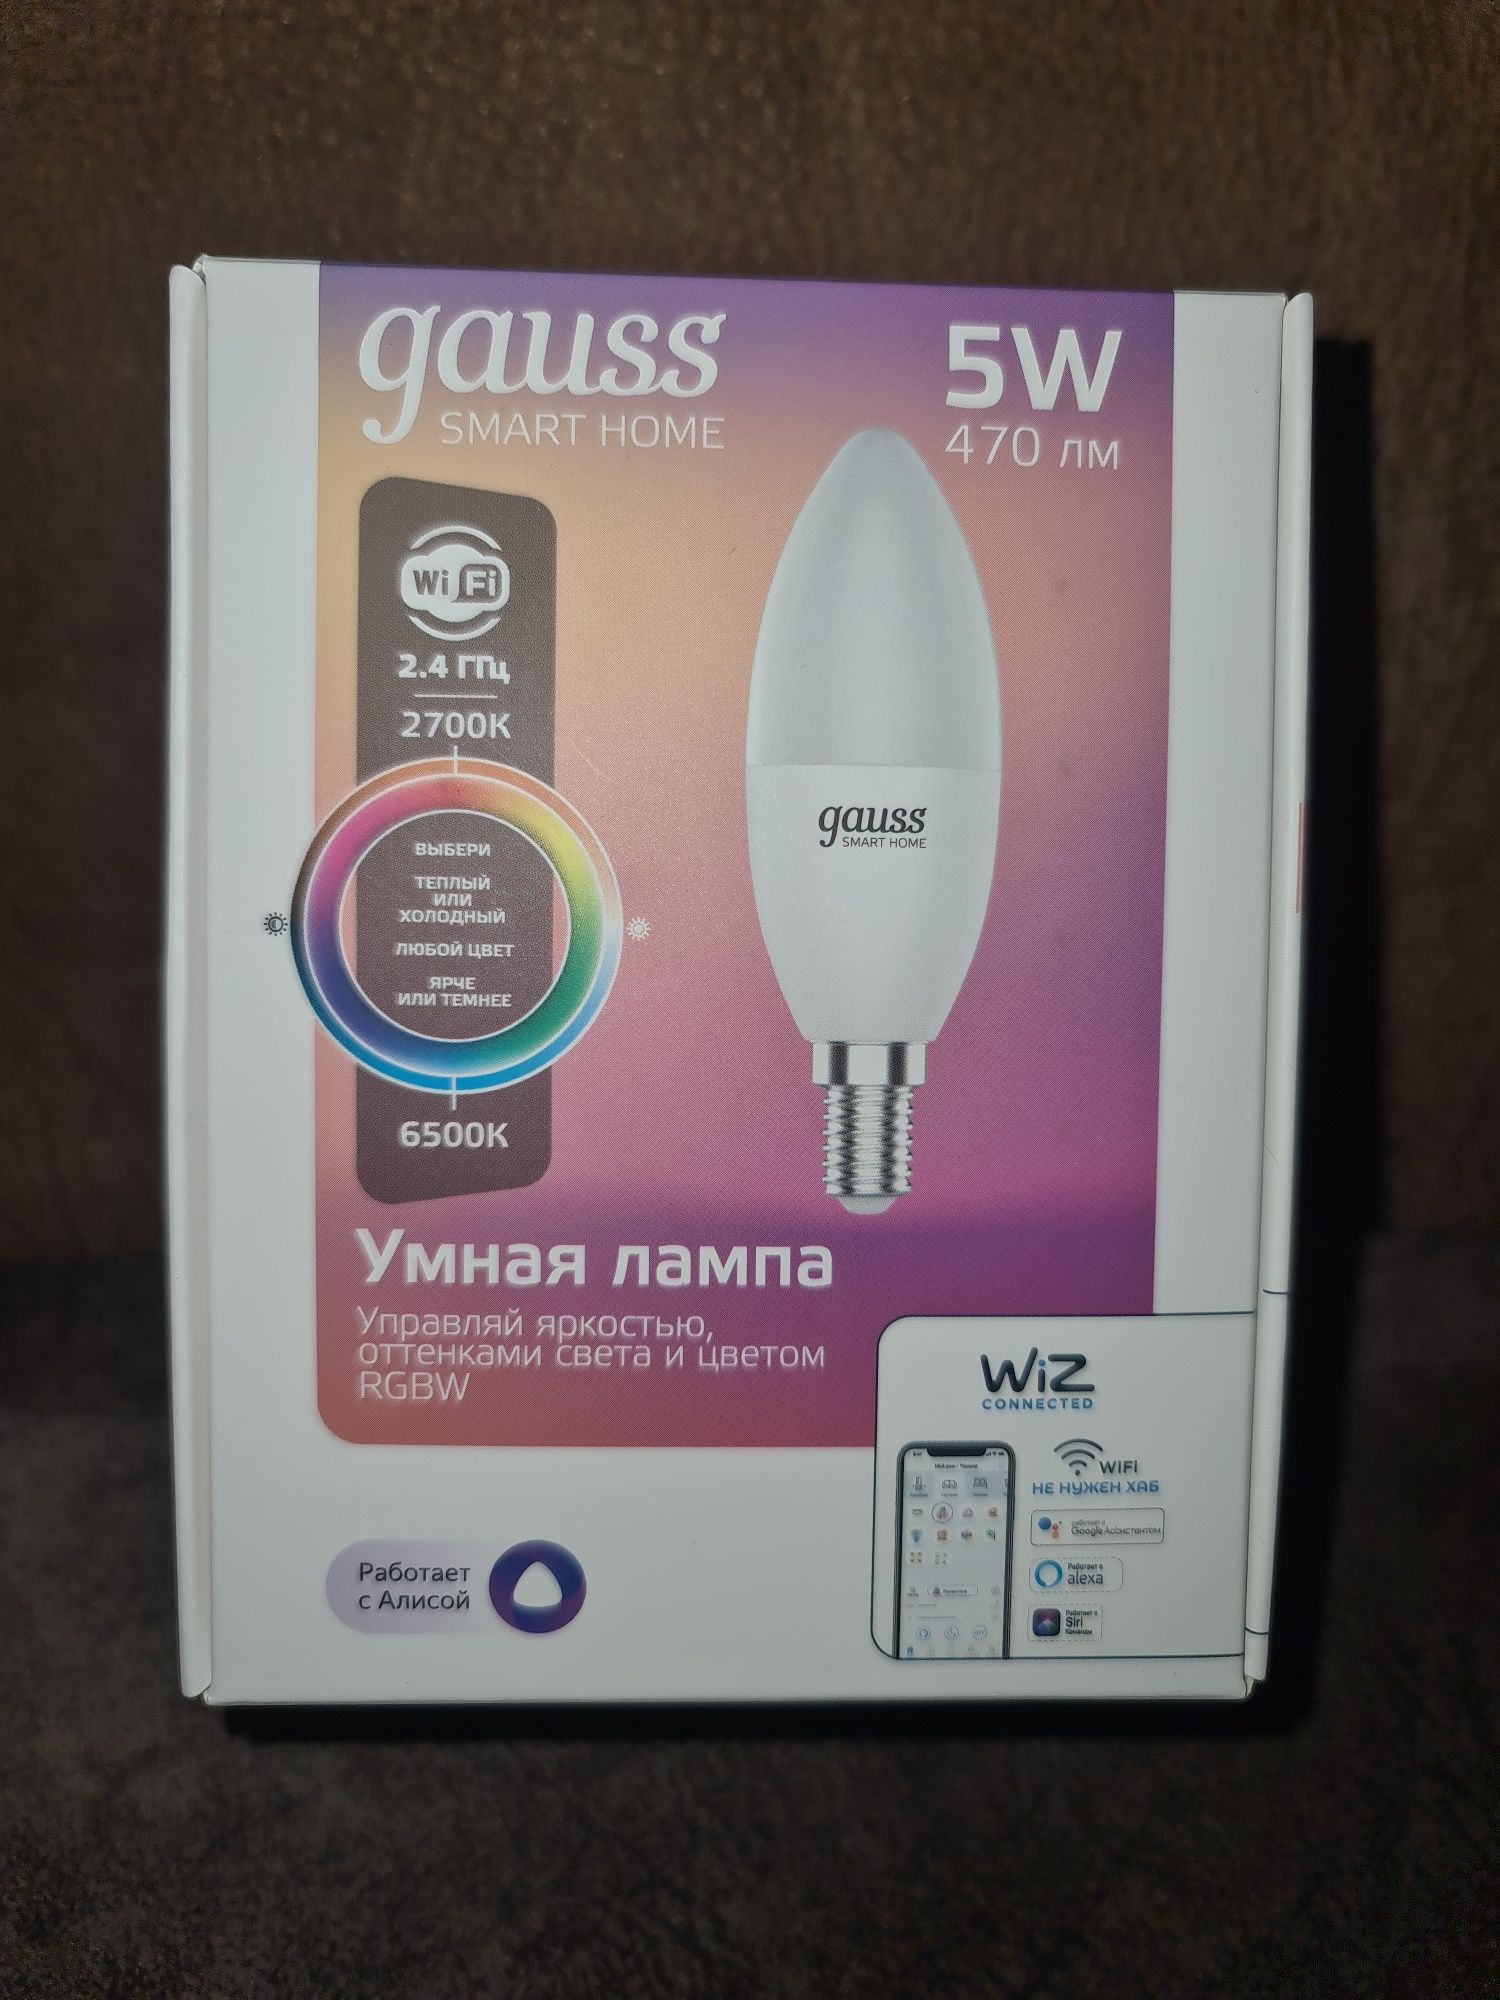 Умная лампочка Gauss Smart Home E14 5w